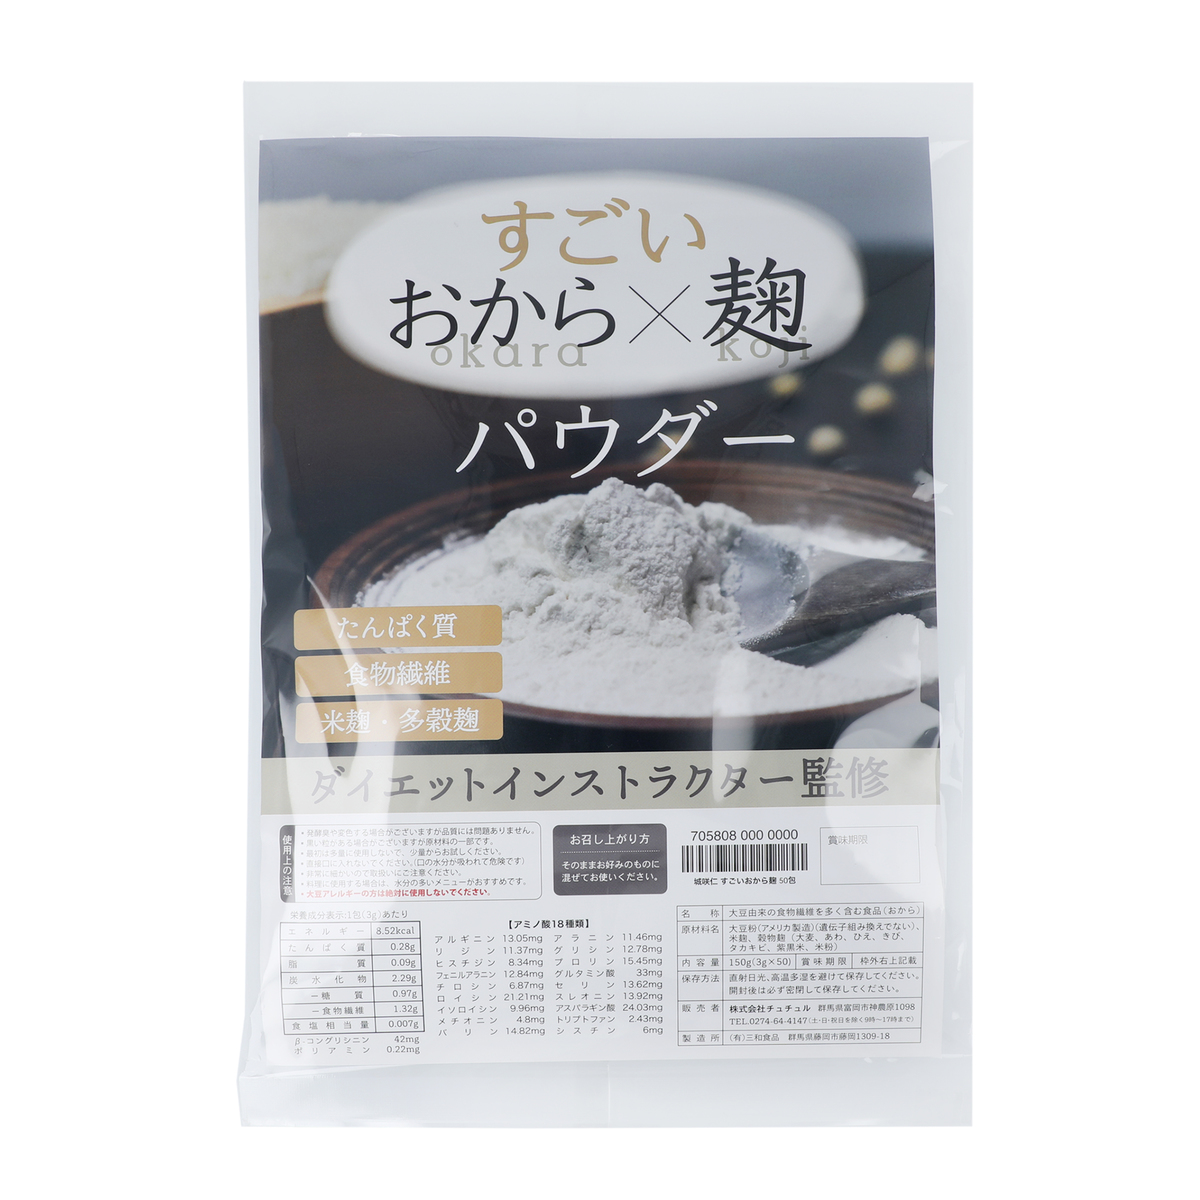 城咲仁 すごいおから麹 200包 - QVC.jp